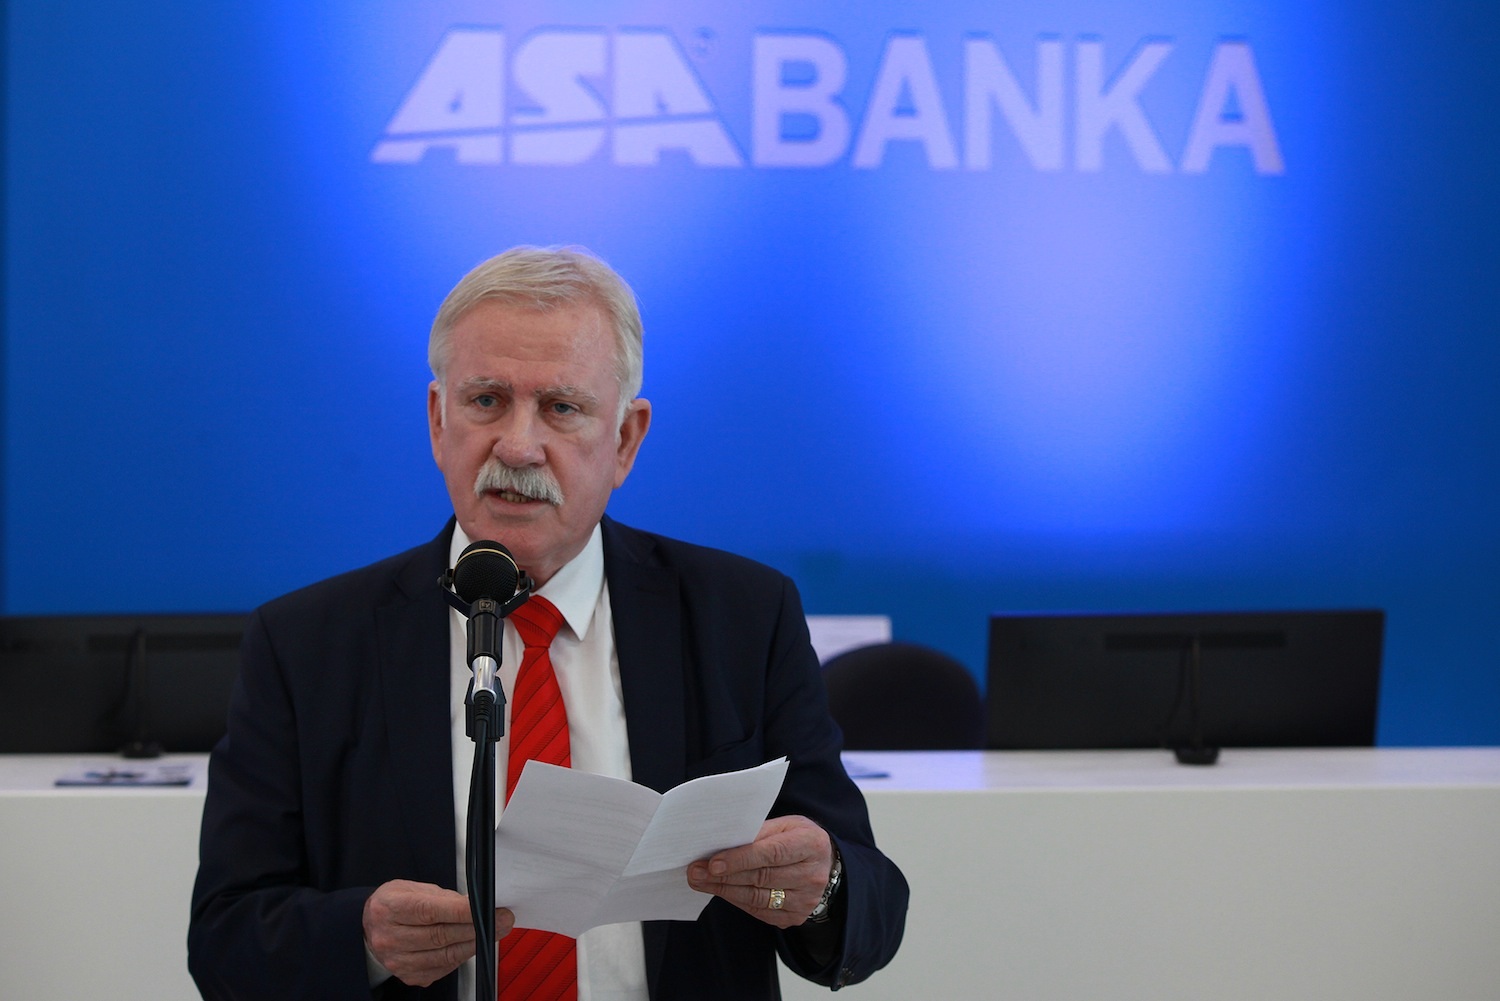 ASA Banka otvorila prvu podružnicu u Gračanici